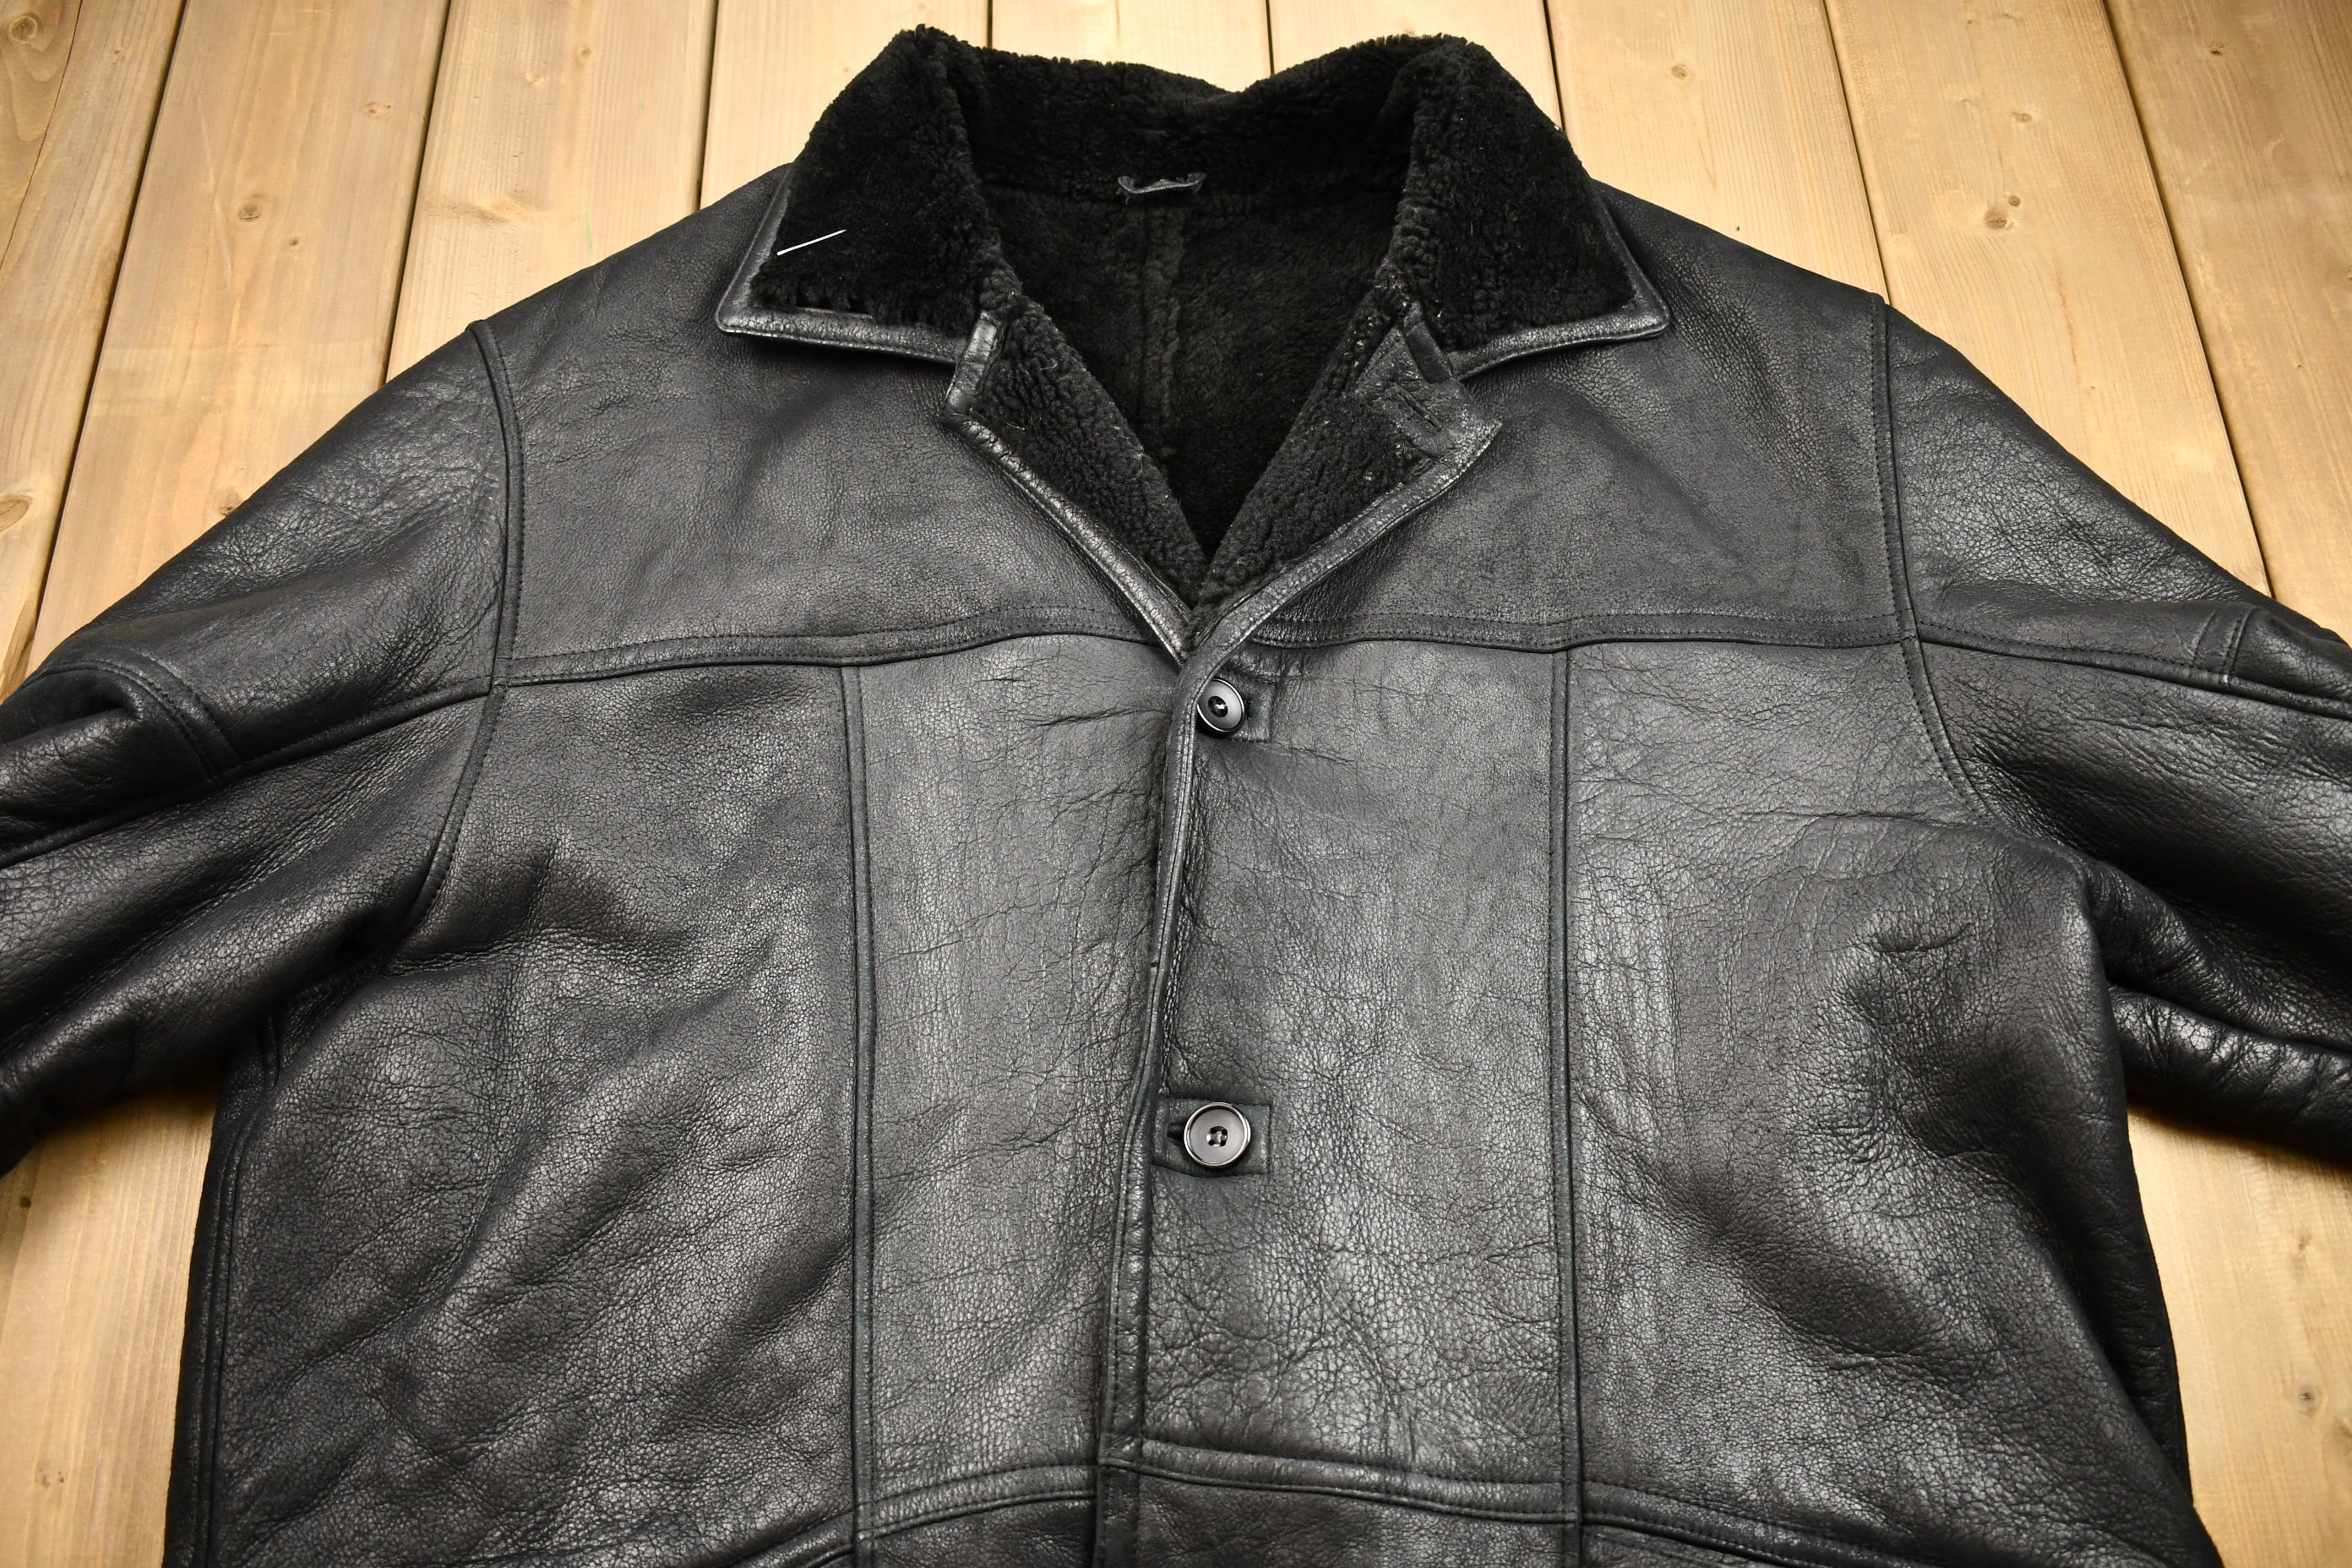 Fleece Leathers Weight Coat / / Lined - Oversized Fashion 1980s Streetwear Vintage Jacket Leather Uomo / Heavy Leather Etsy Jacket Pronto